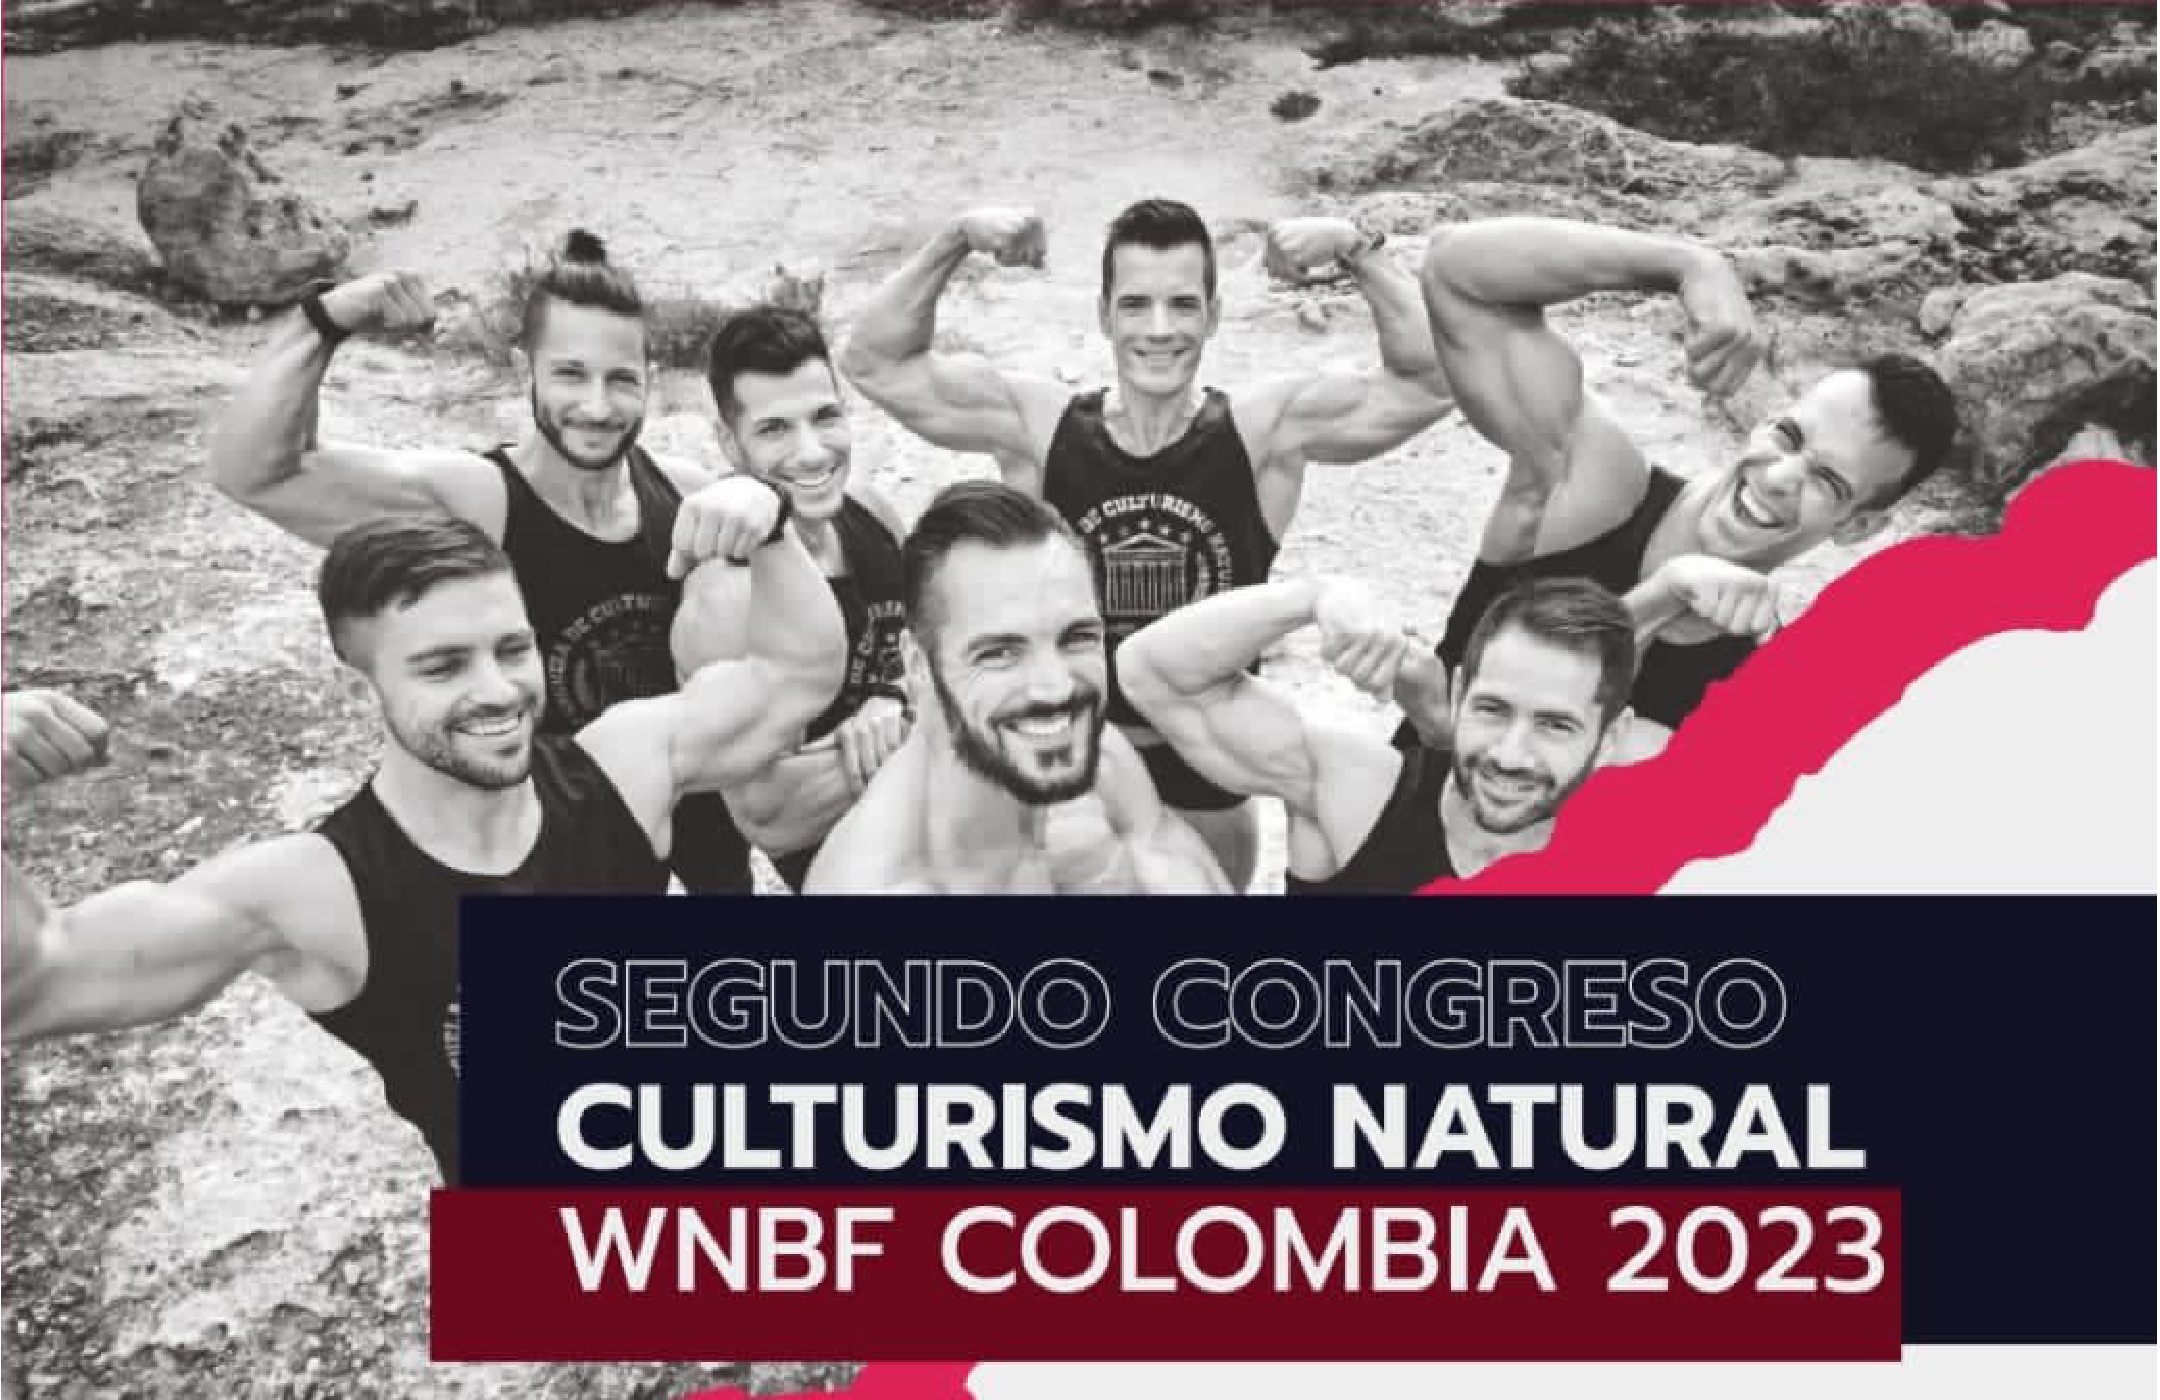 Culturismo natural WNBF Colombia 2023